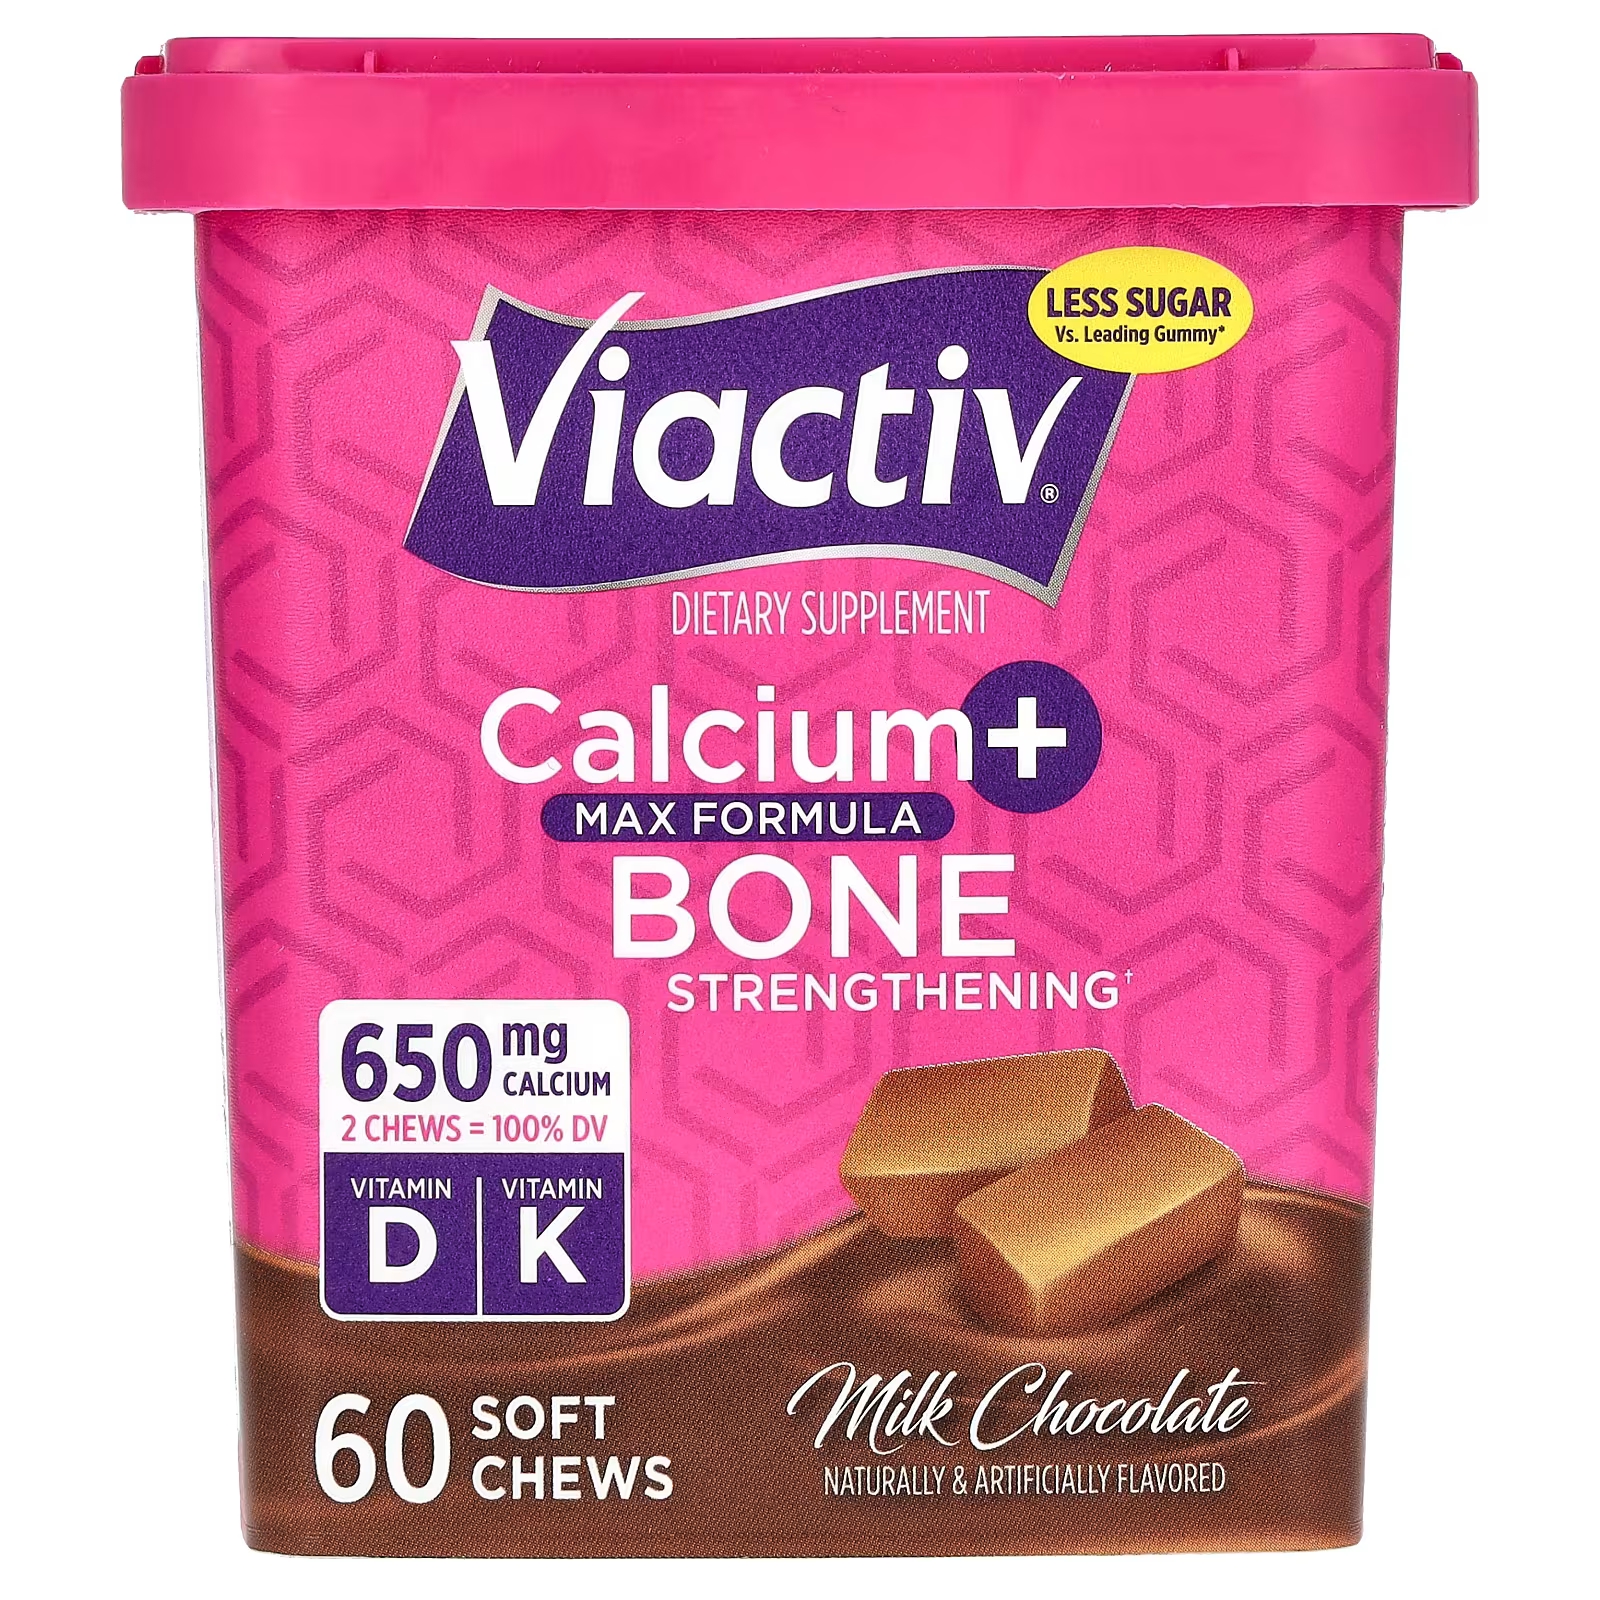 Молочный шоколад Viactiv Calcium + Bone Strengthening Max Formula, 60 мягких жевательных конфет цена и фото